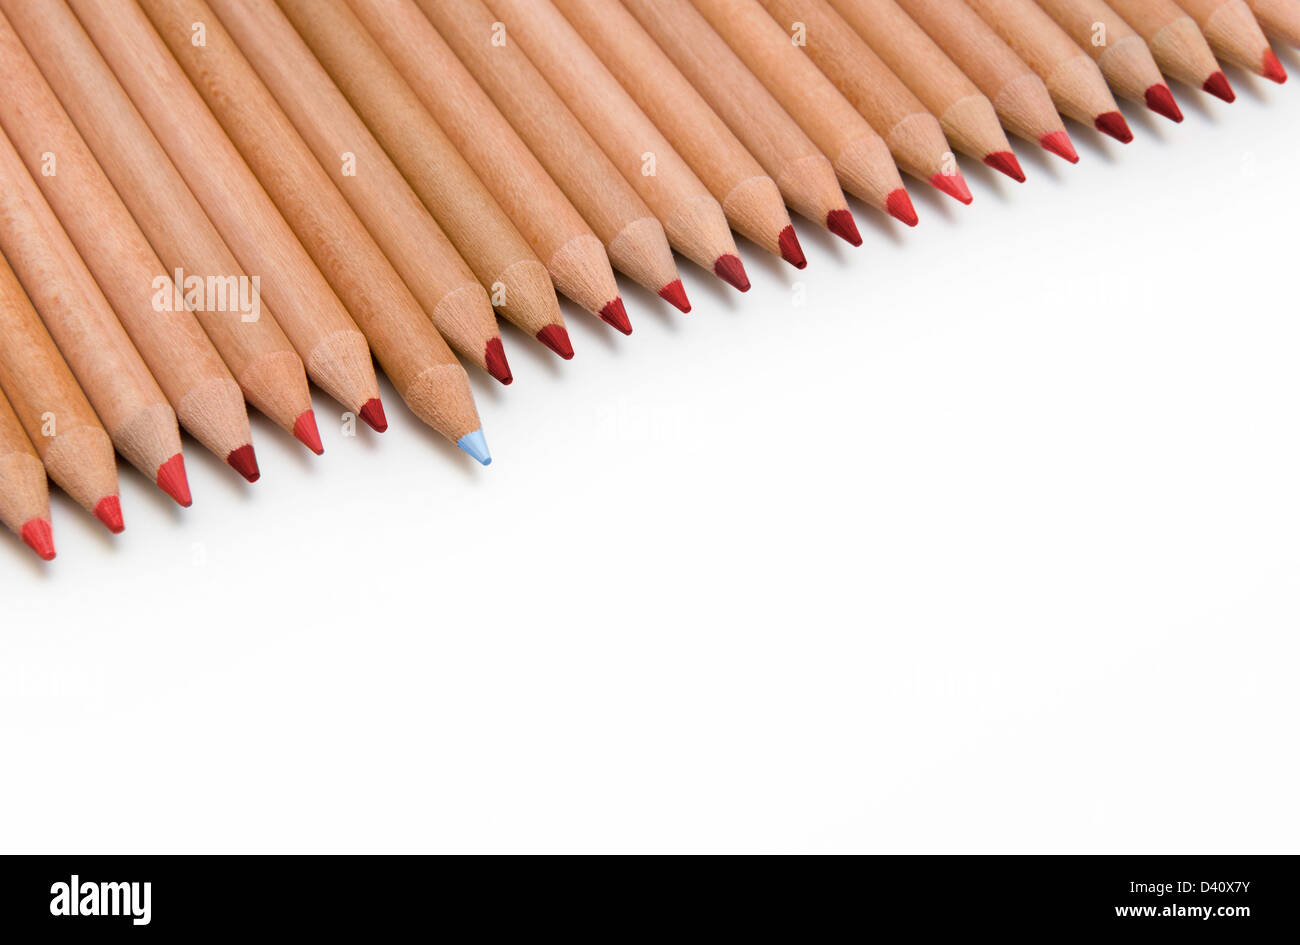 Linie der roten Buntstifte mit einem blauen Stift, die herausragen - Unterschied-Konzept Stockfoto